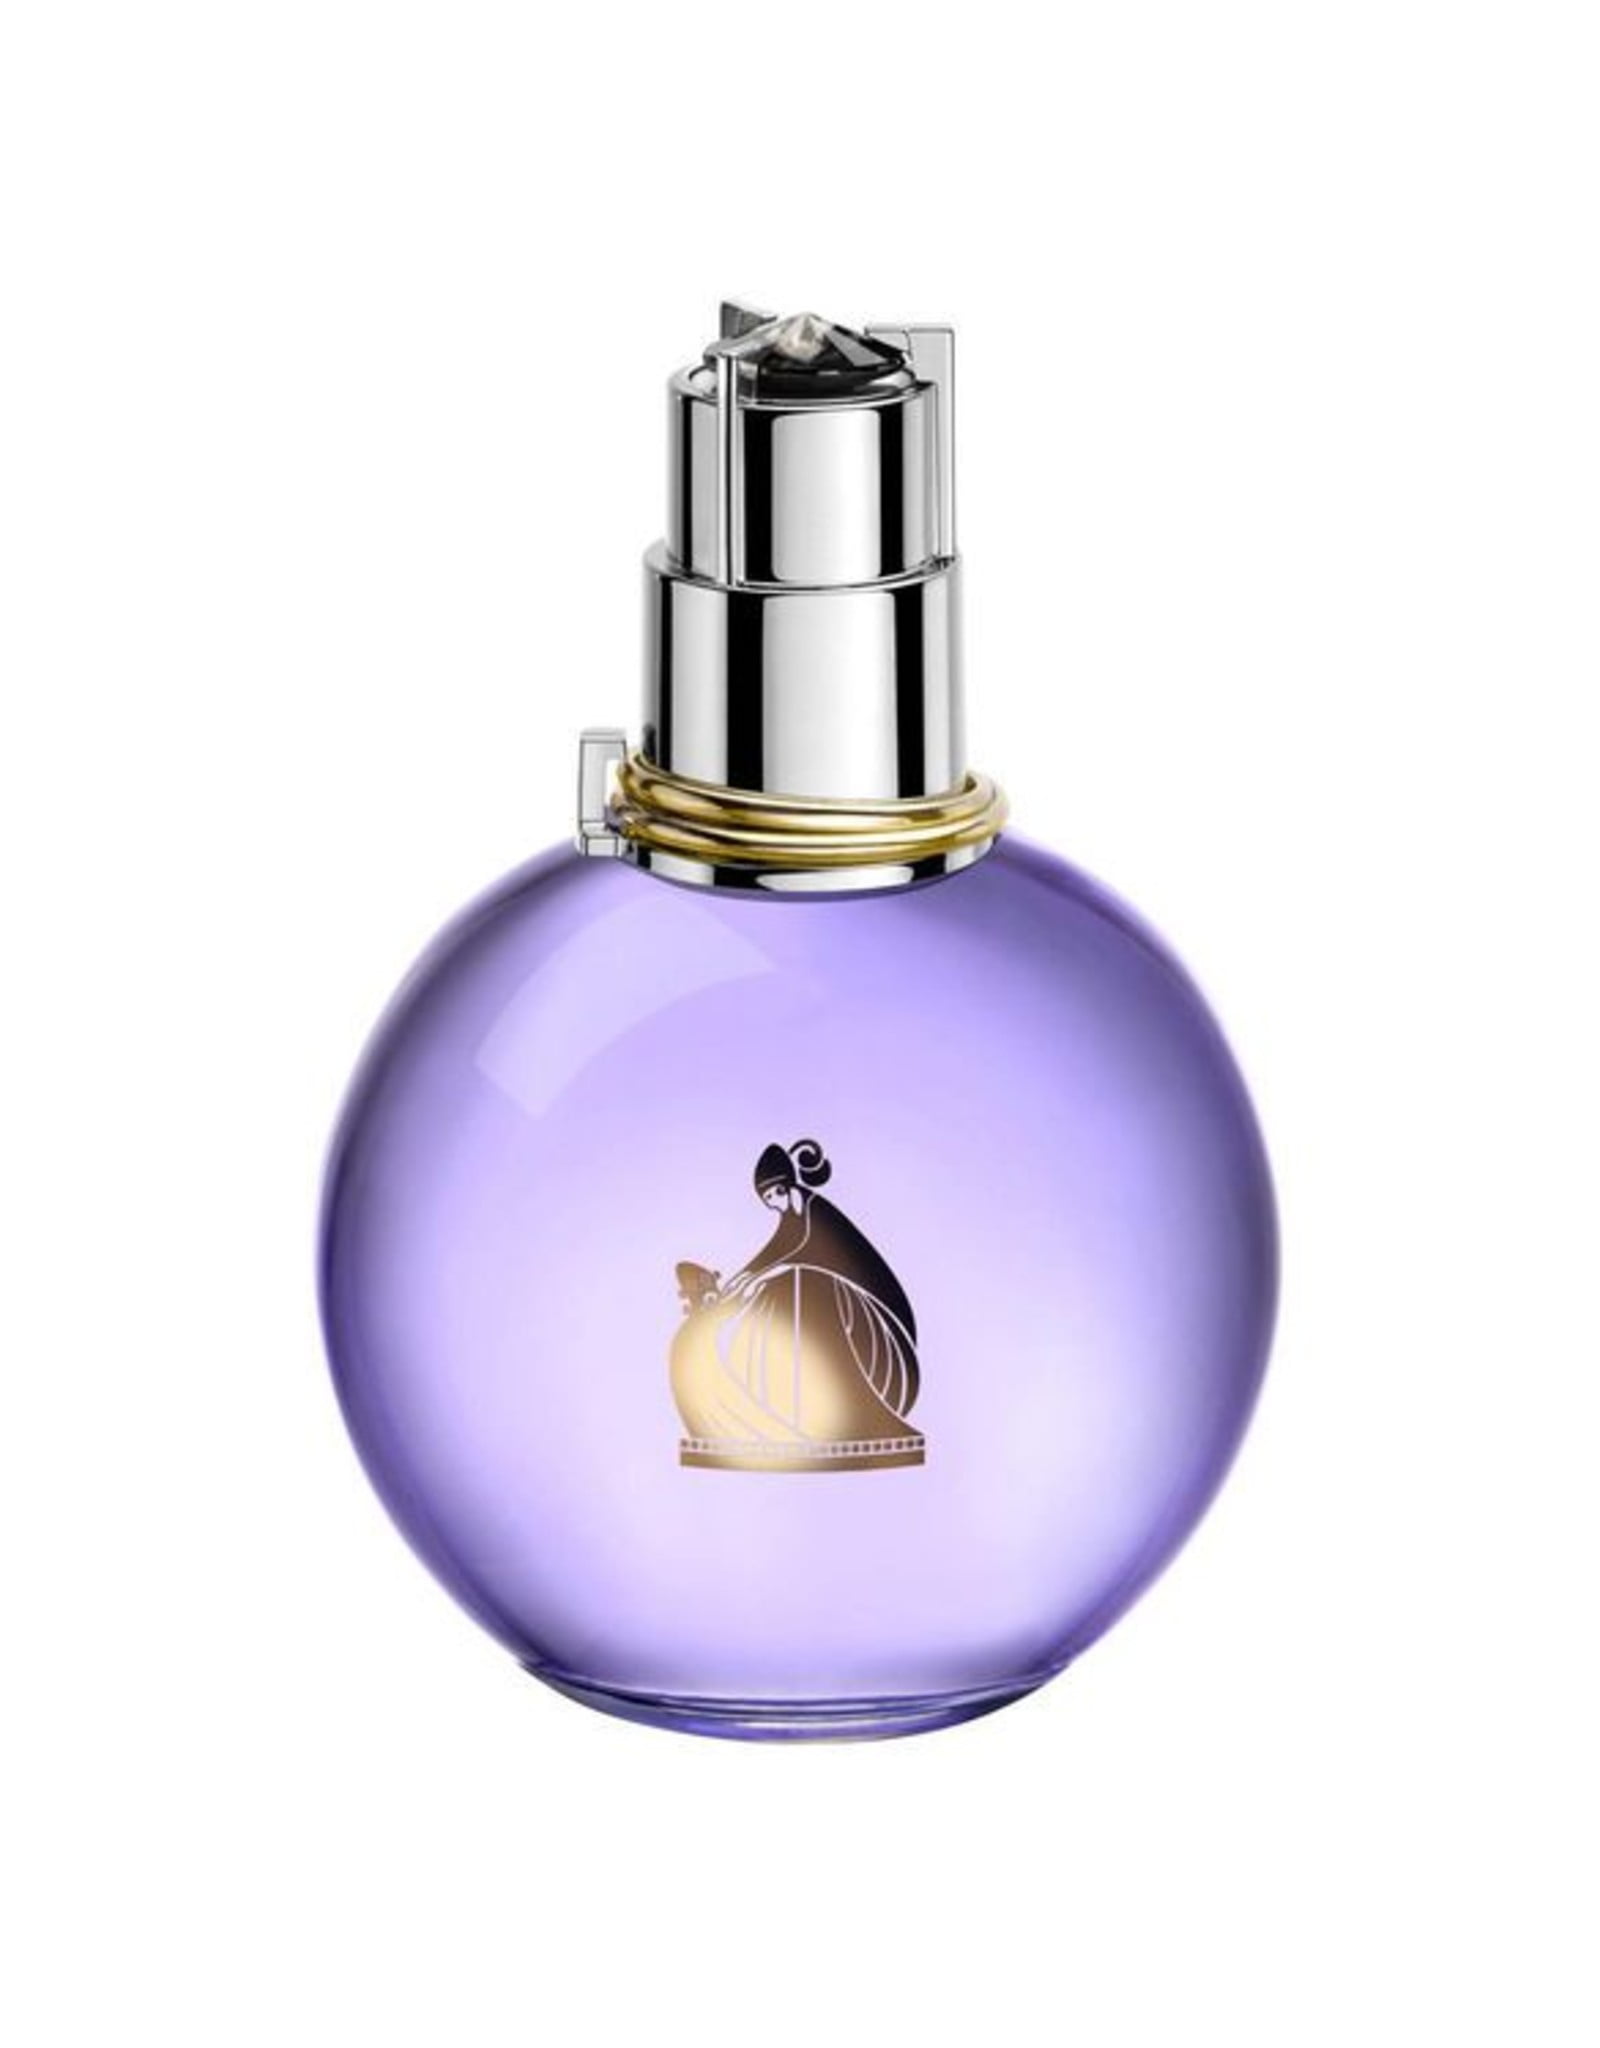 Lanvin Eclat D'Arpege By Lanvin Womens Eau De Parfum (EDP) Spray 1 Oz  3386461519457 - Fragrances & Beauty, Eclat D'Arpege - Jomashop